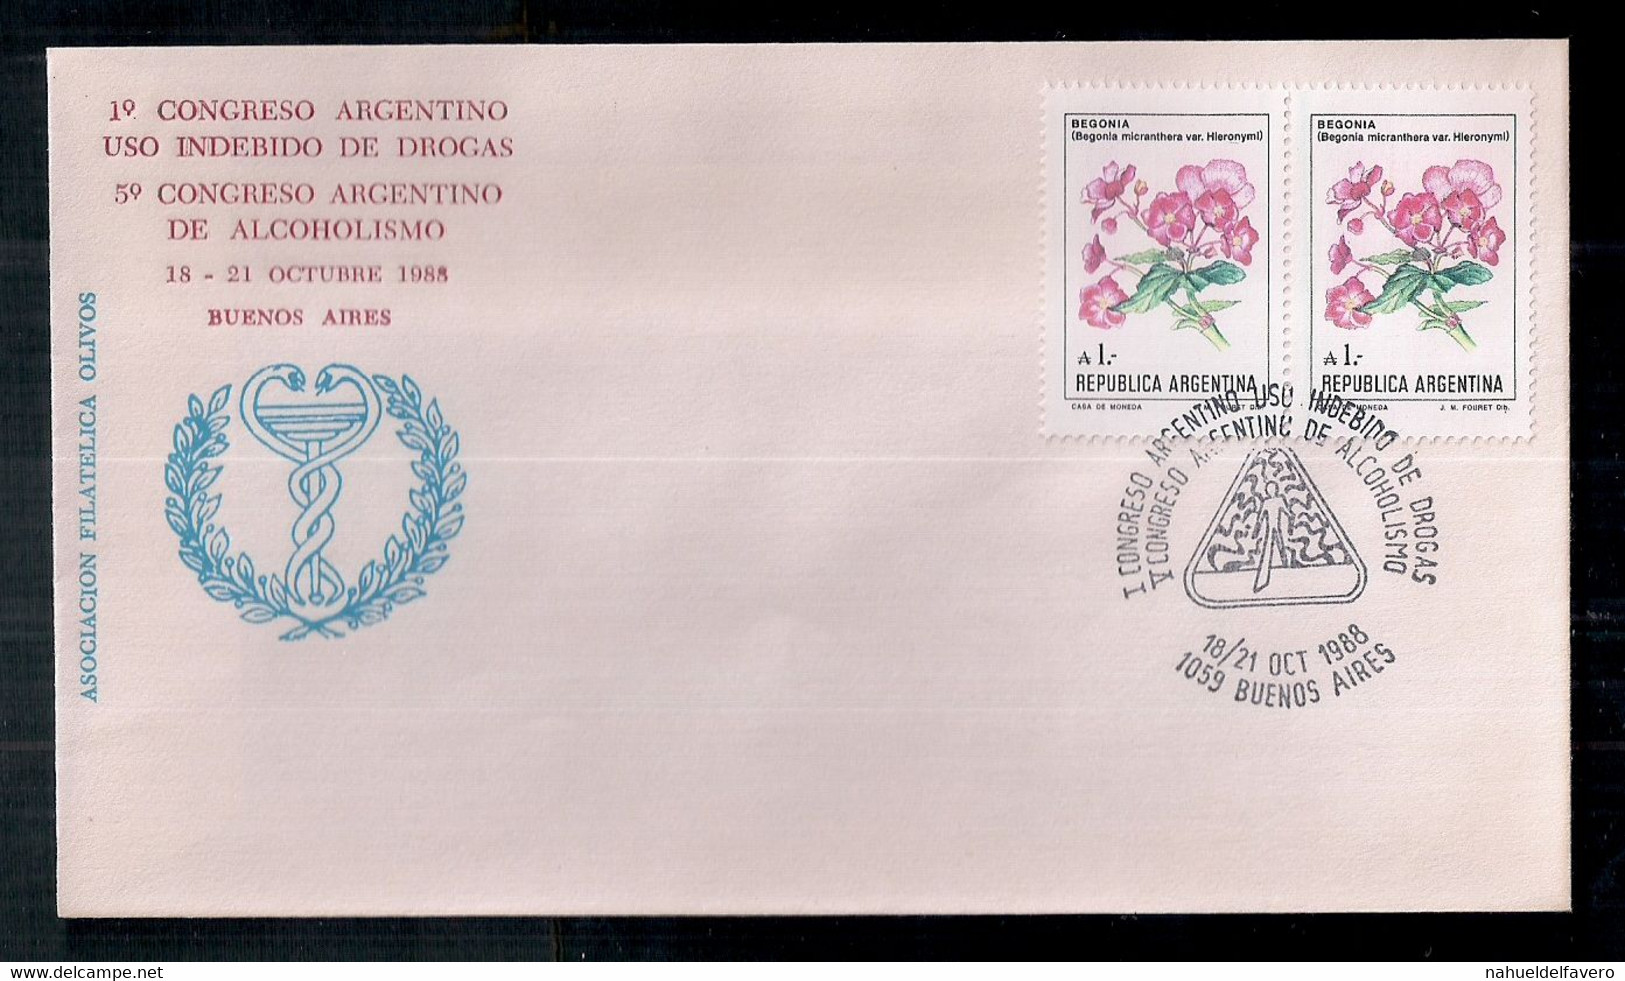 Argentina - Enveloppe Avec Cachets Spéciaux - 1988 - 1°Congrès Argentin - Toxicomanie / 9° Congrès Argentin De L'alcooli - Drugs